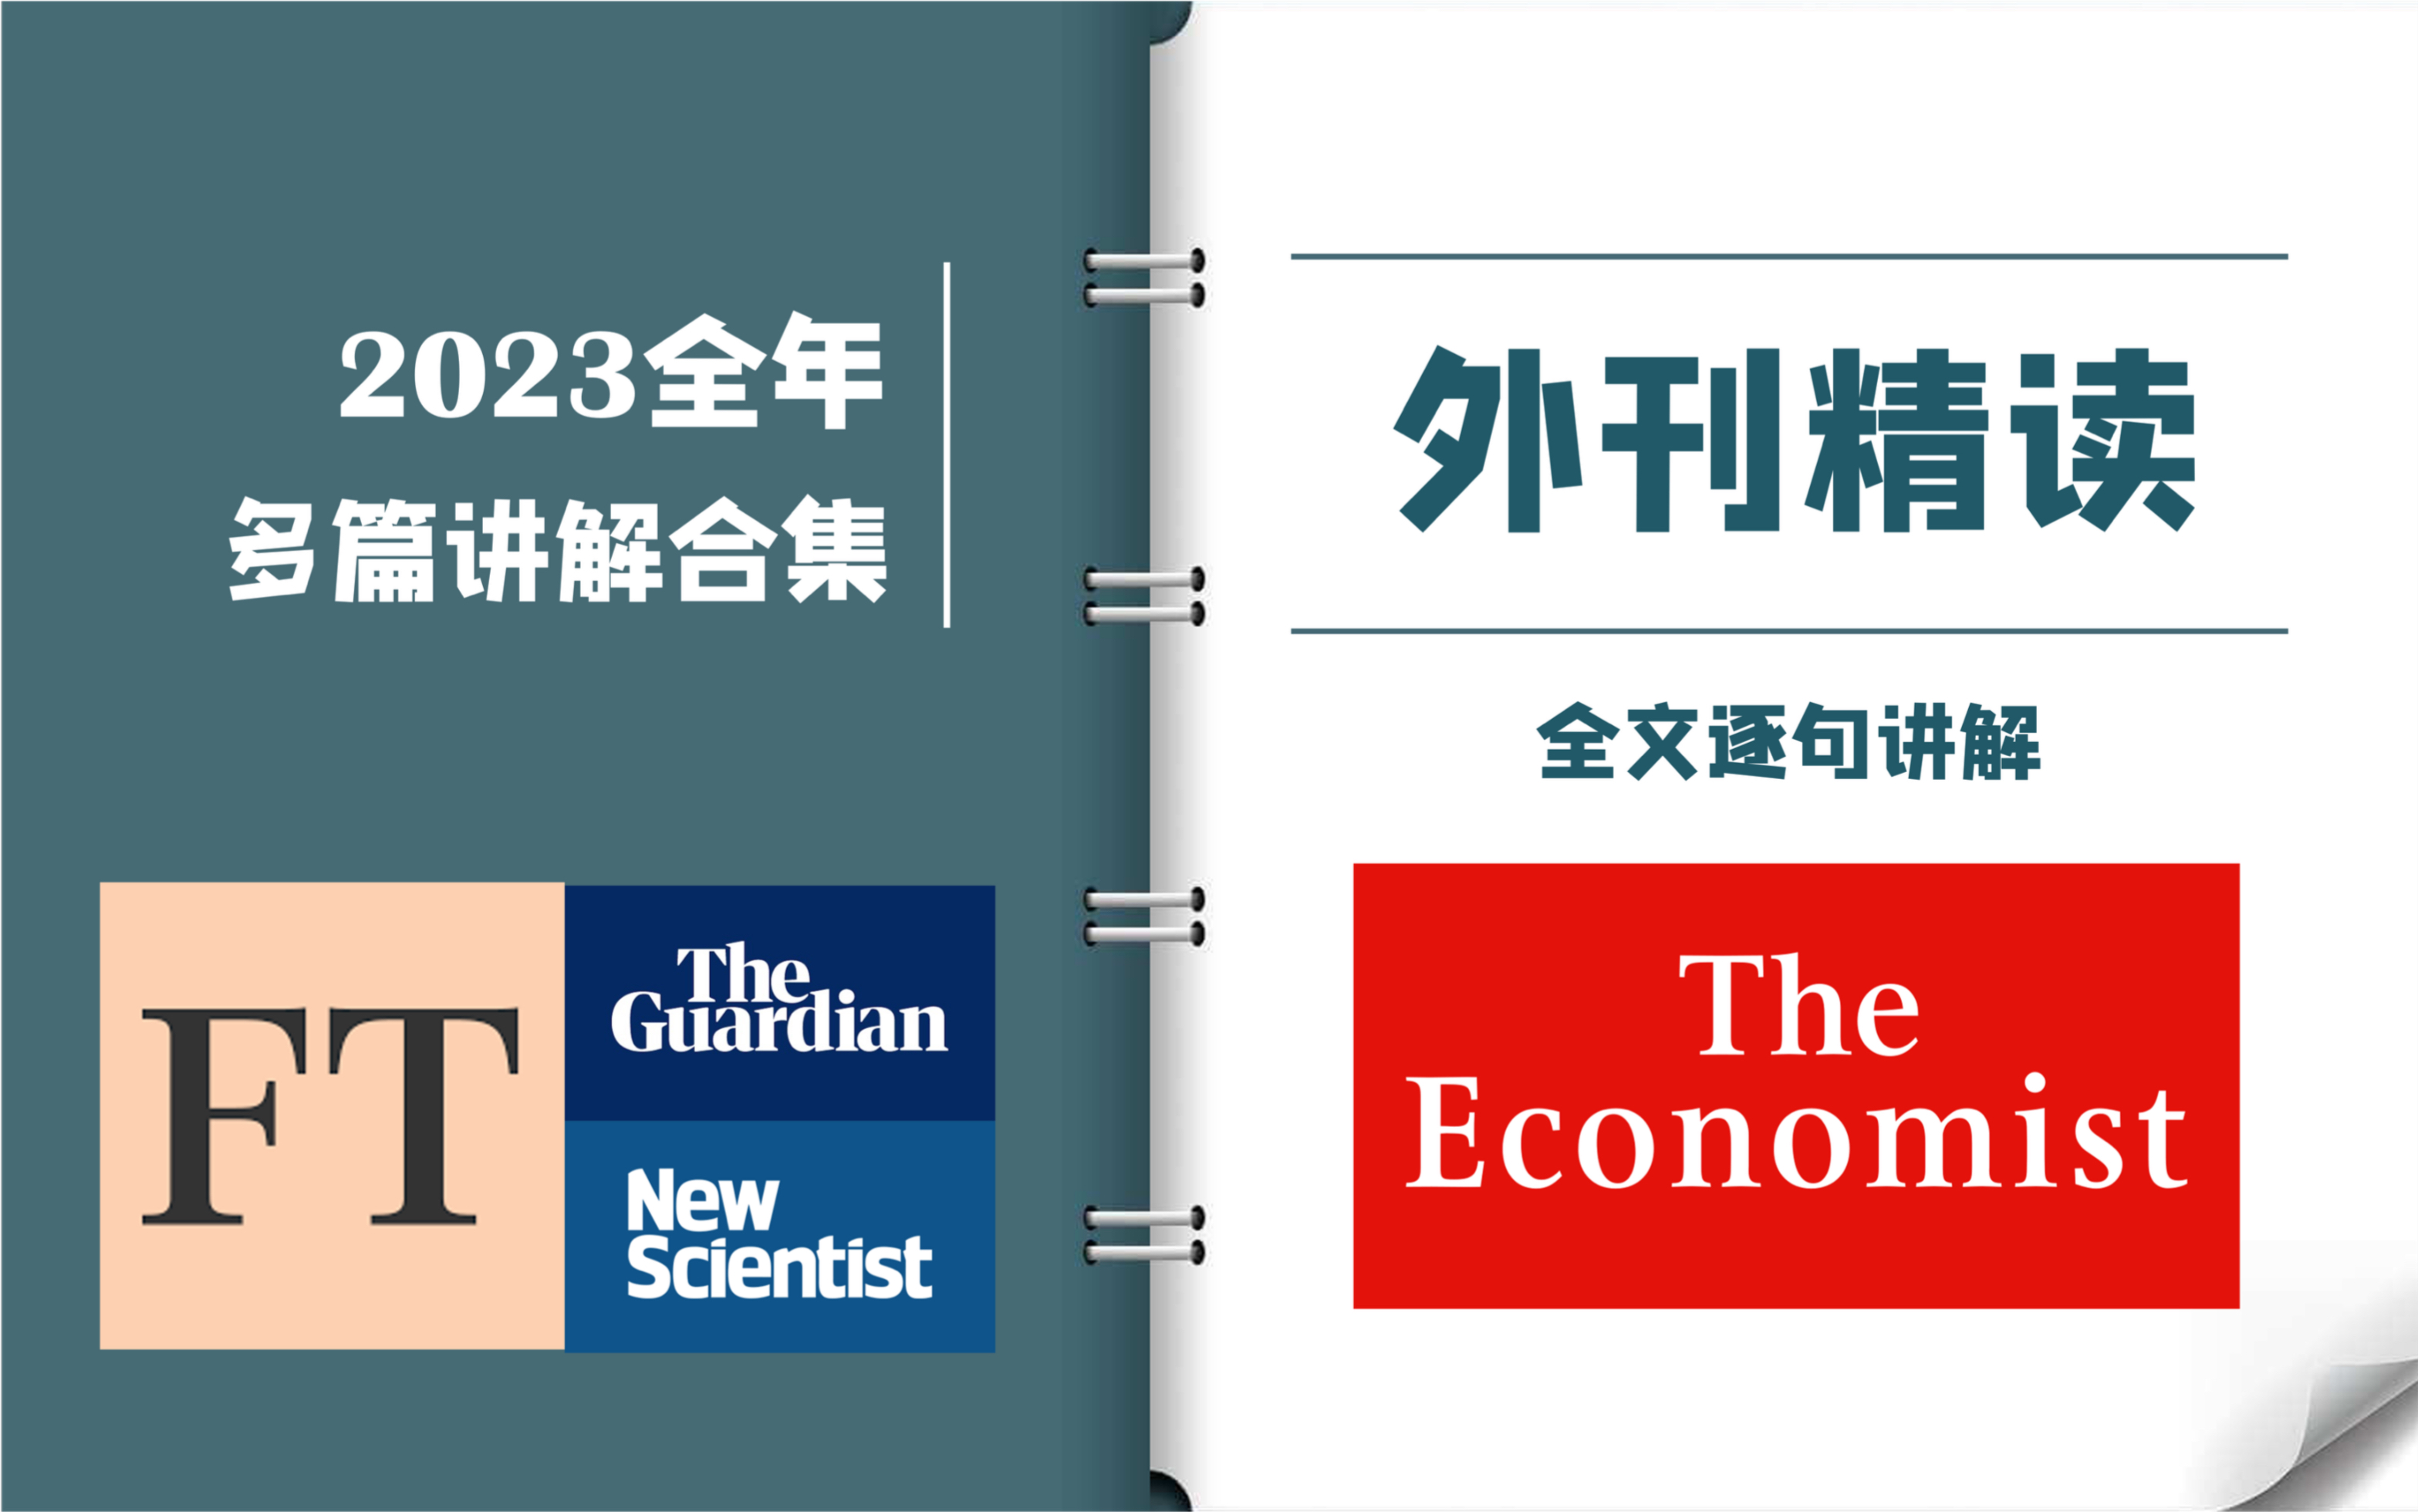 外刊逐句精读 | 2023全年合集 | 《经济学人》《卫报》《金融时报》| CATTI一级译员外刊精读